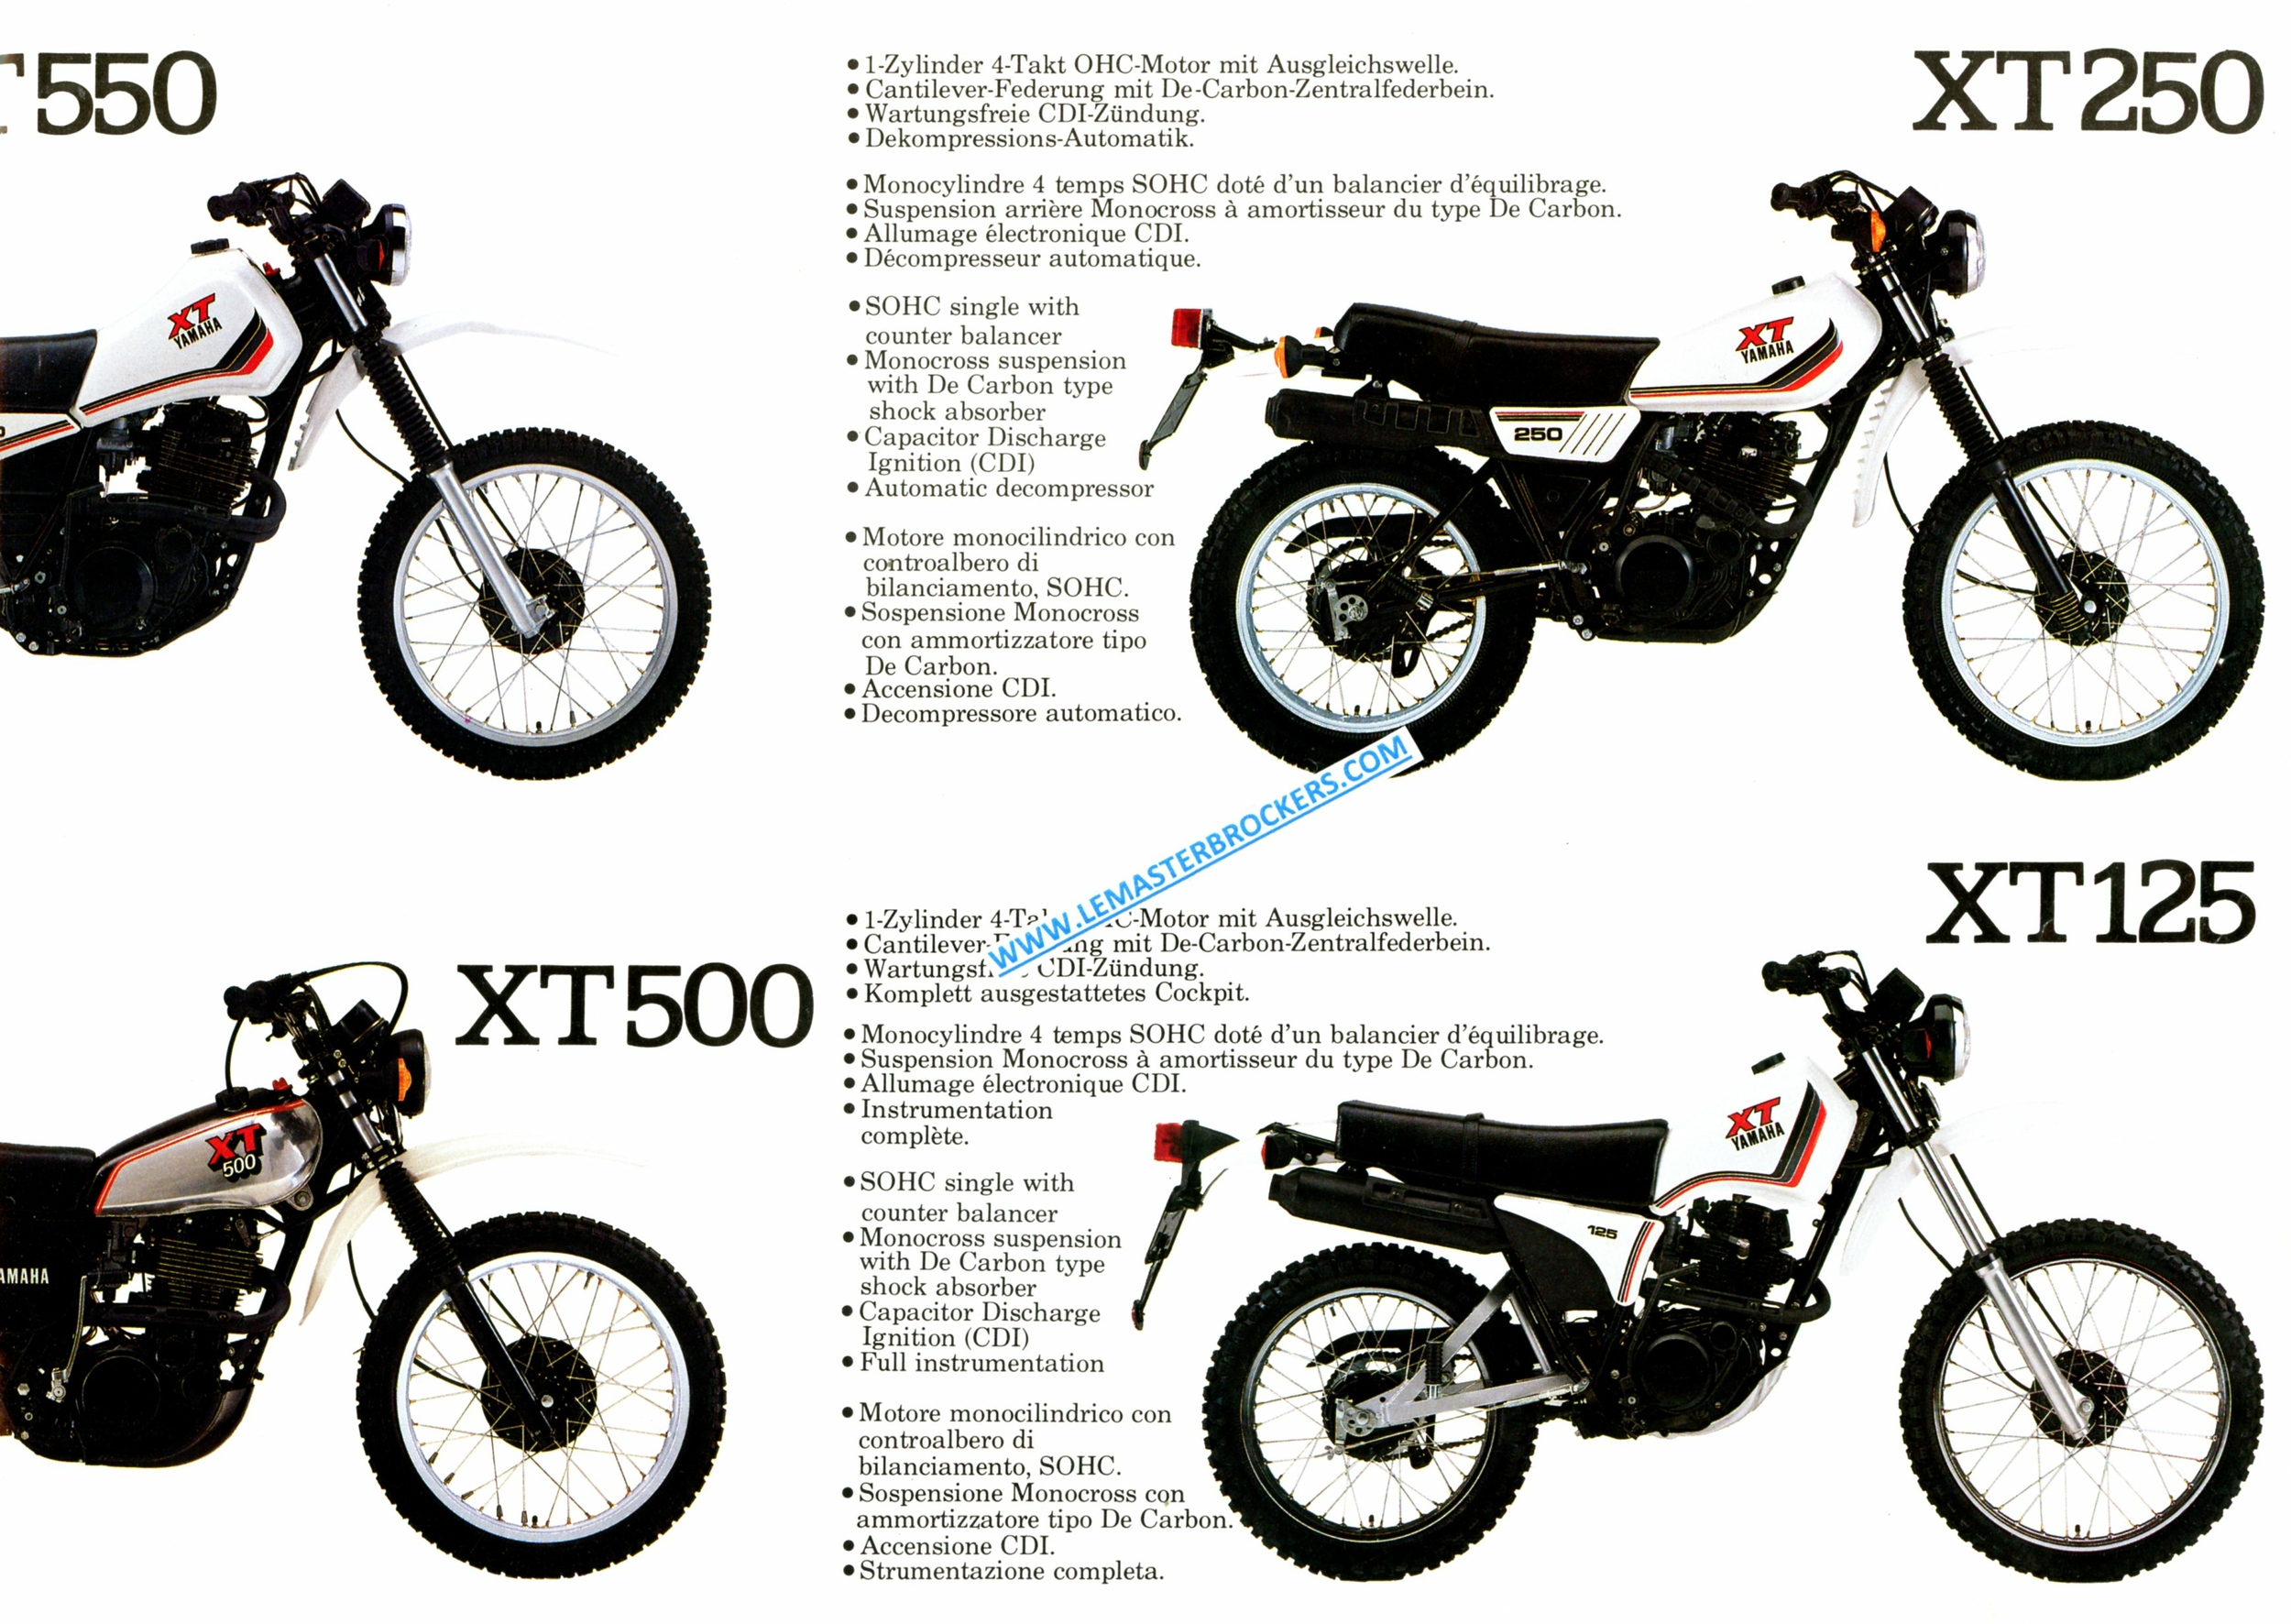 BROCHURE-MOTO-YAMAHA-XT-XT550-XT500-XT250-XT125-LEMASTERBROCKERS